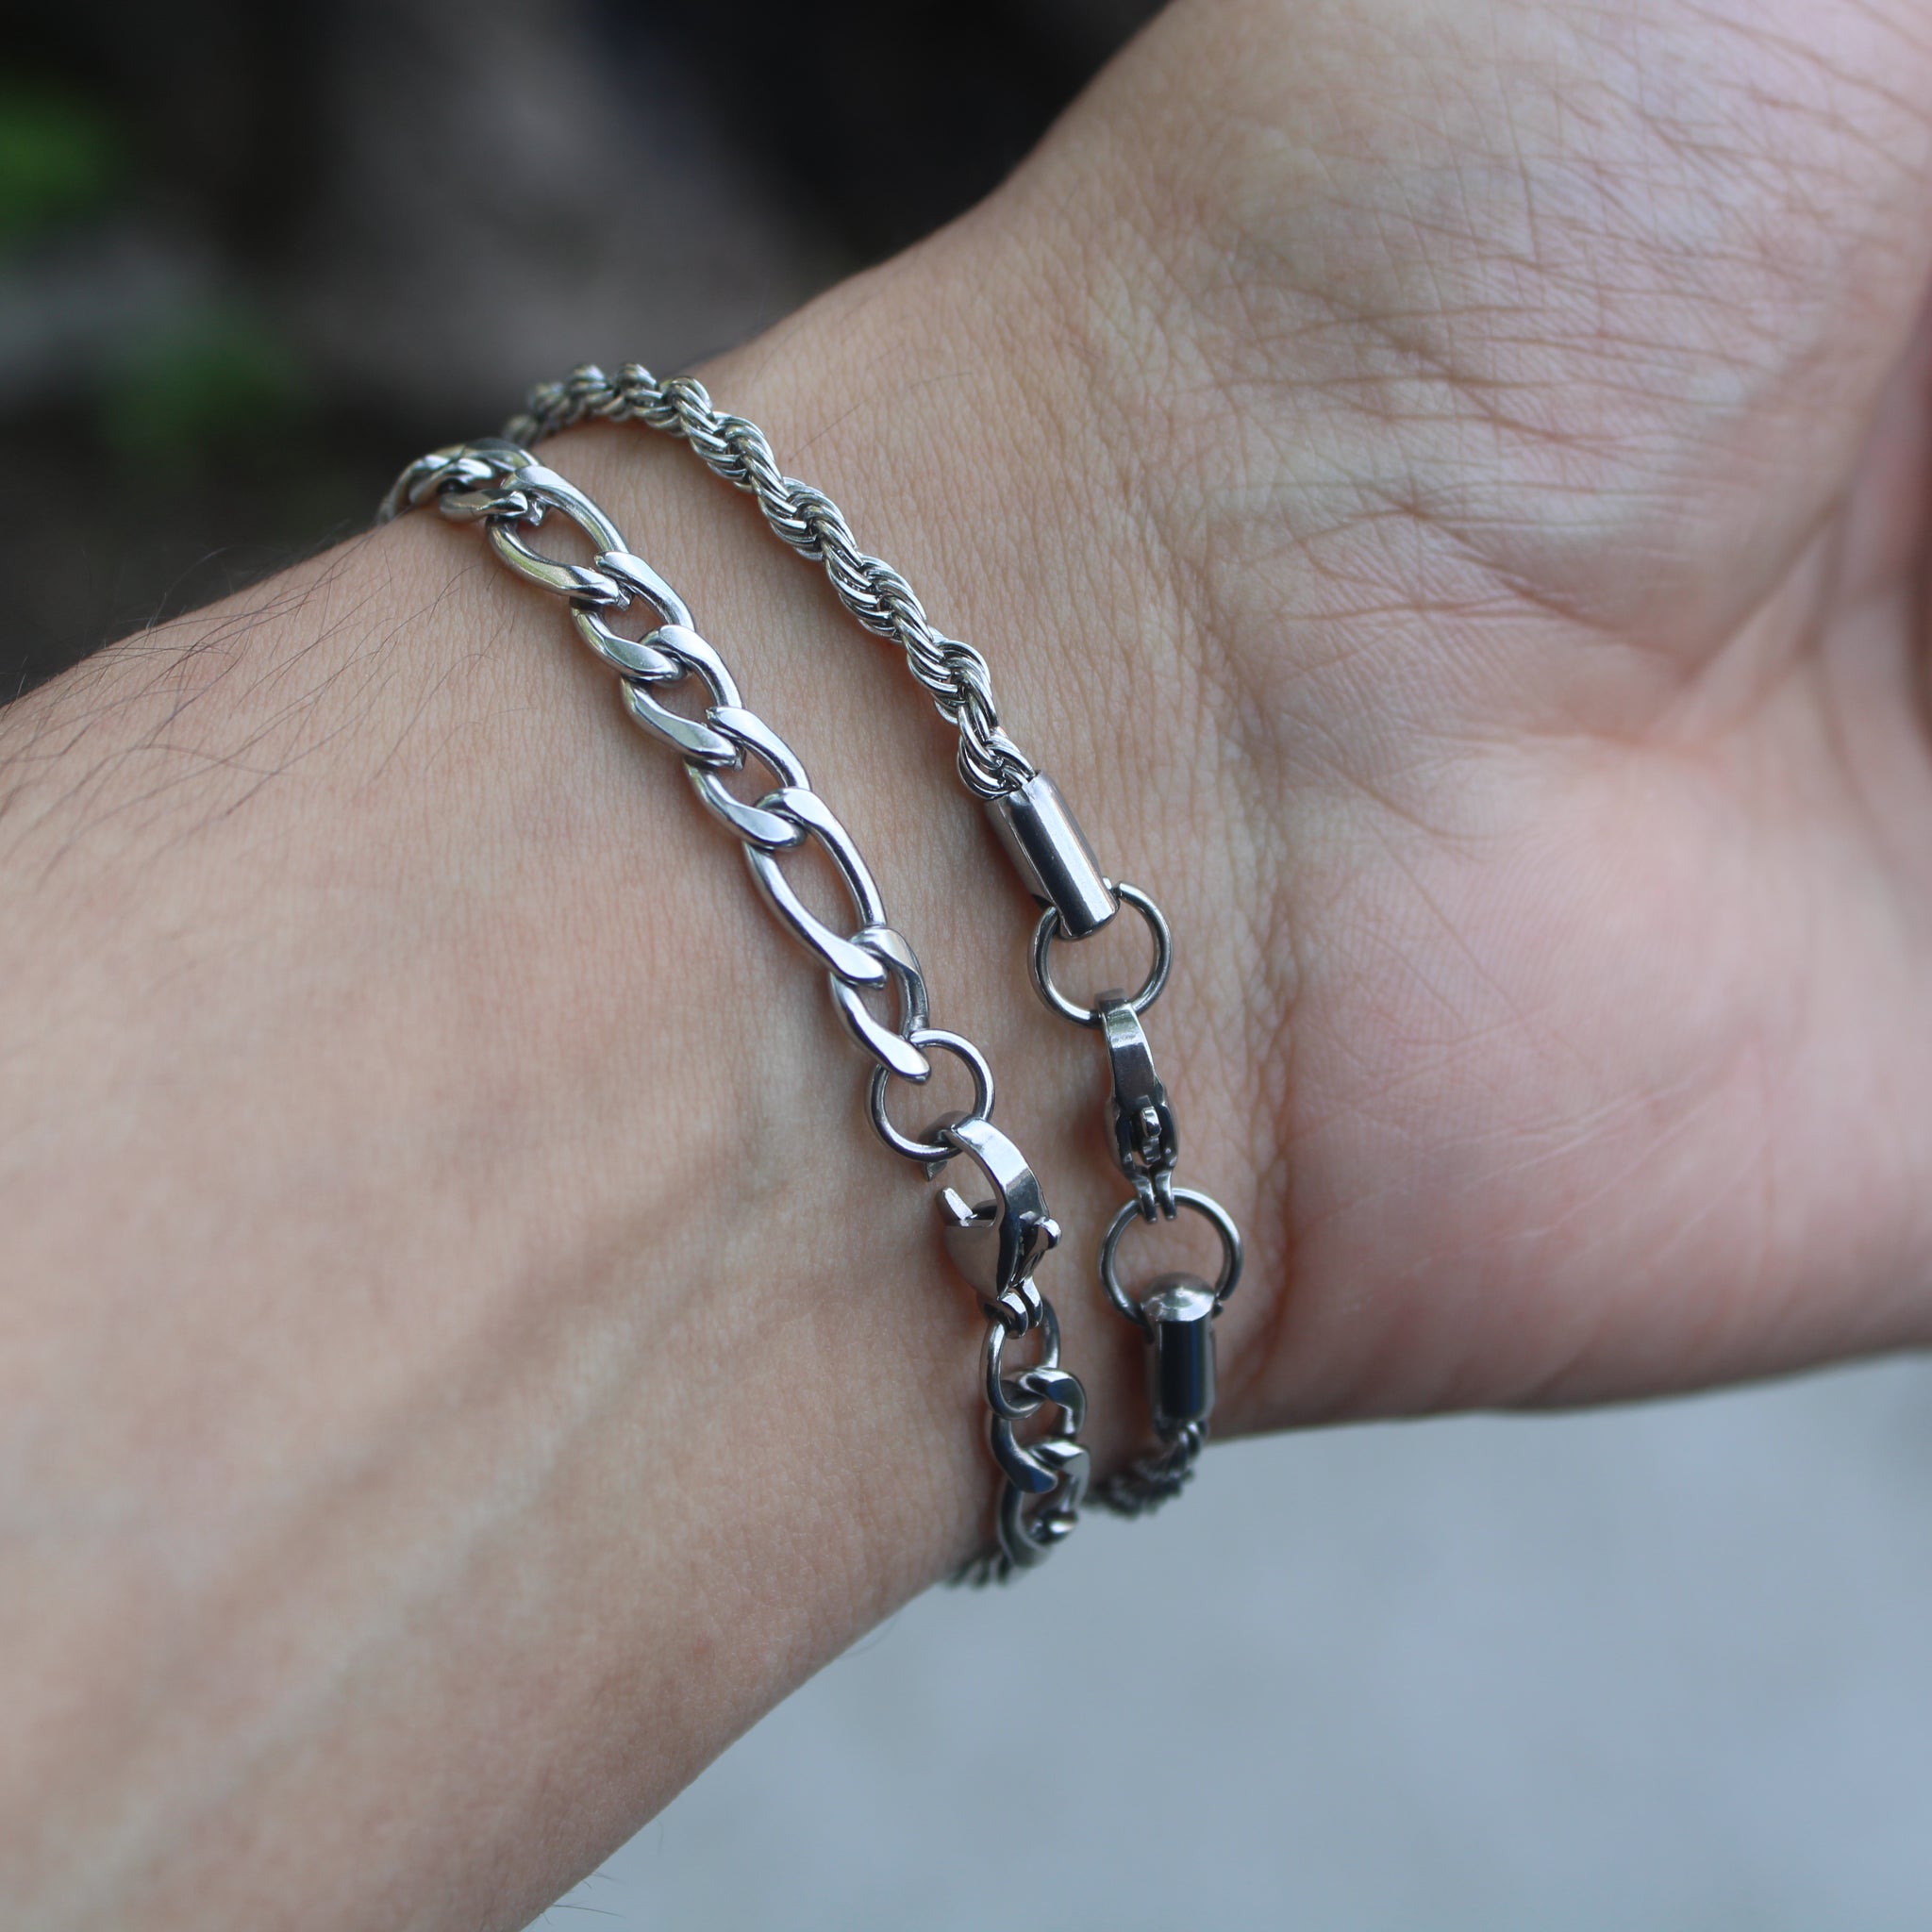 Links 5mm Bracelet in Silver